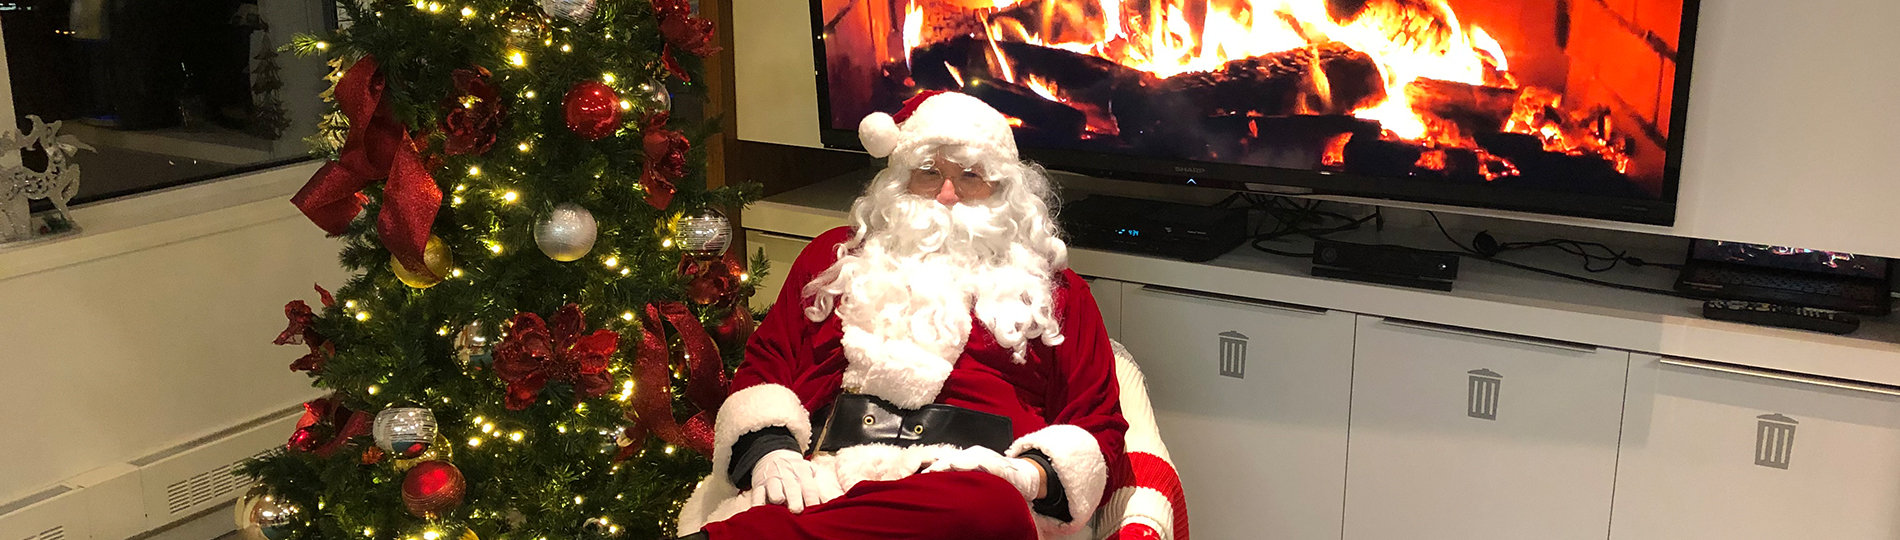 Gilles Garceau déguisé en Père Noël, assis près d’un foyer numérique et d’un sapin de Noël